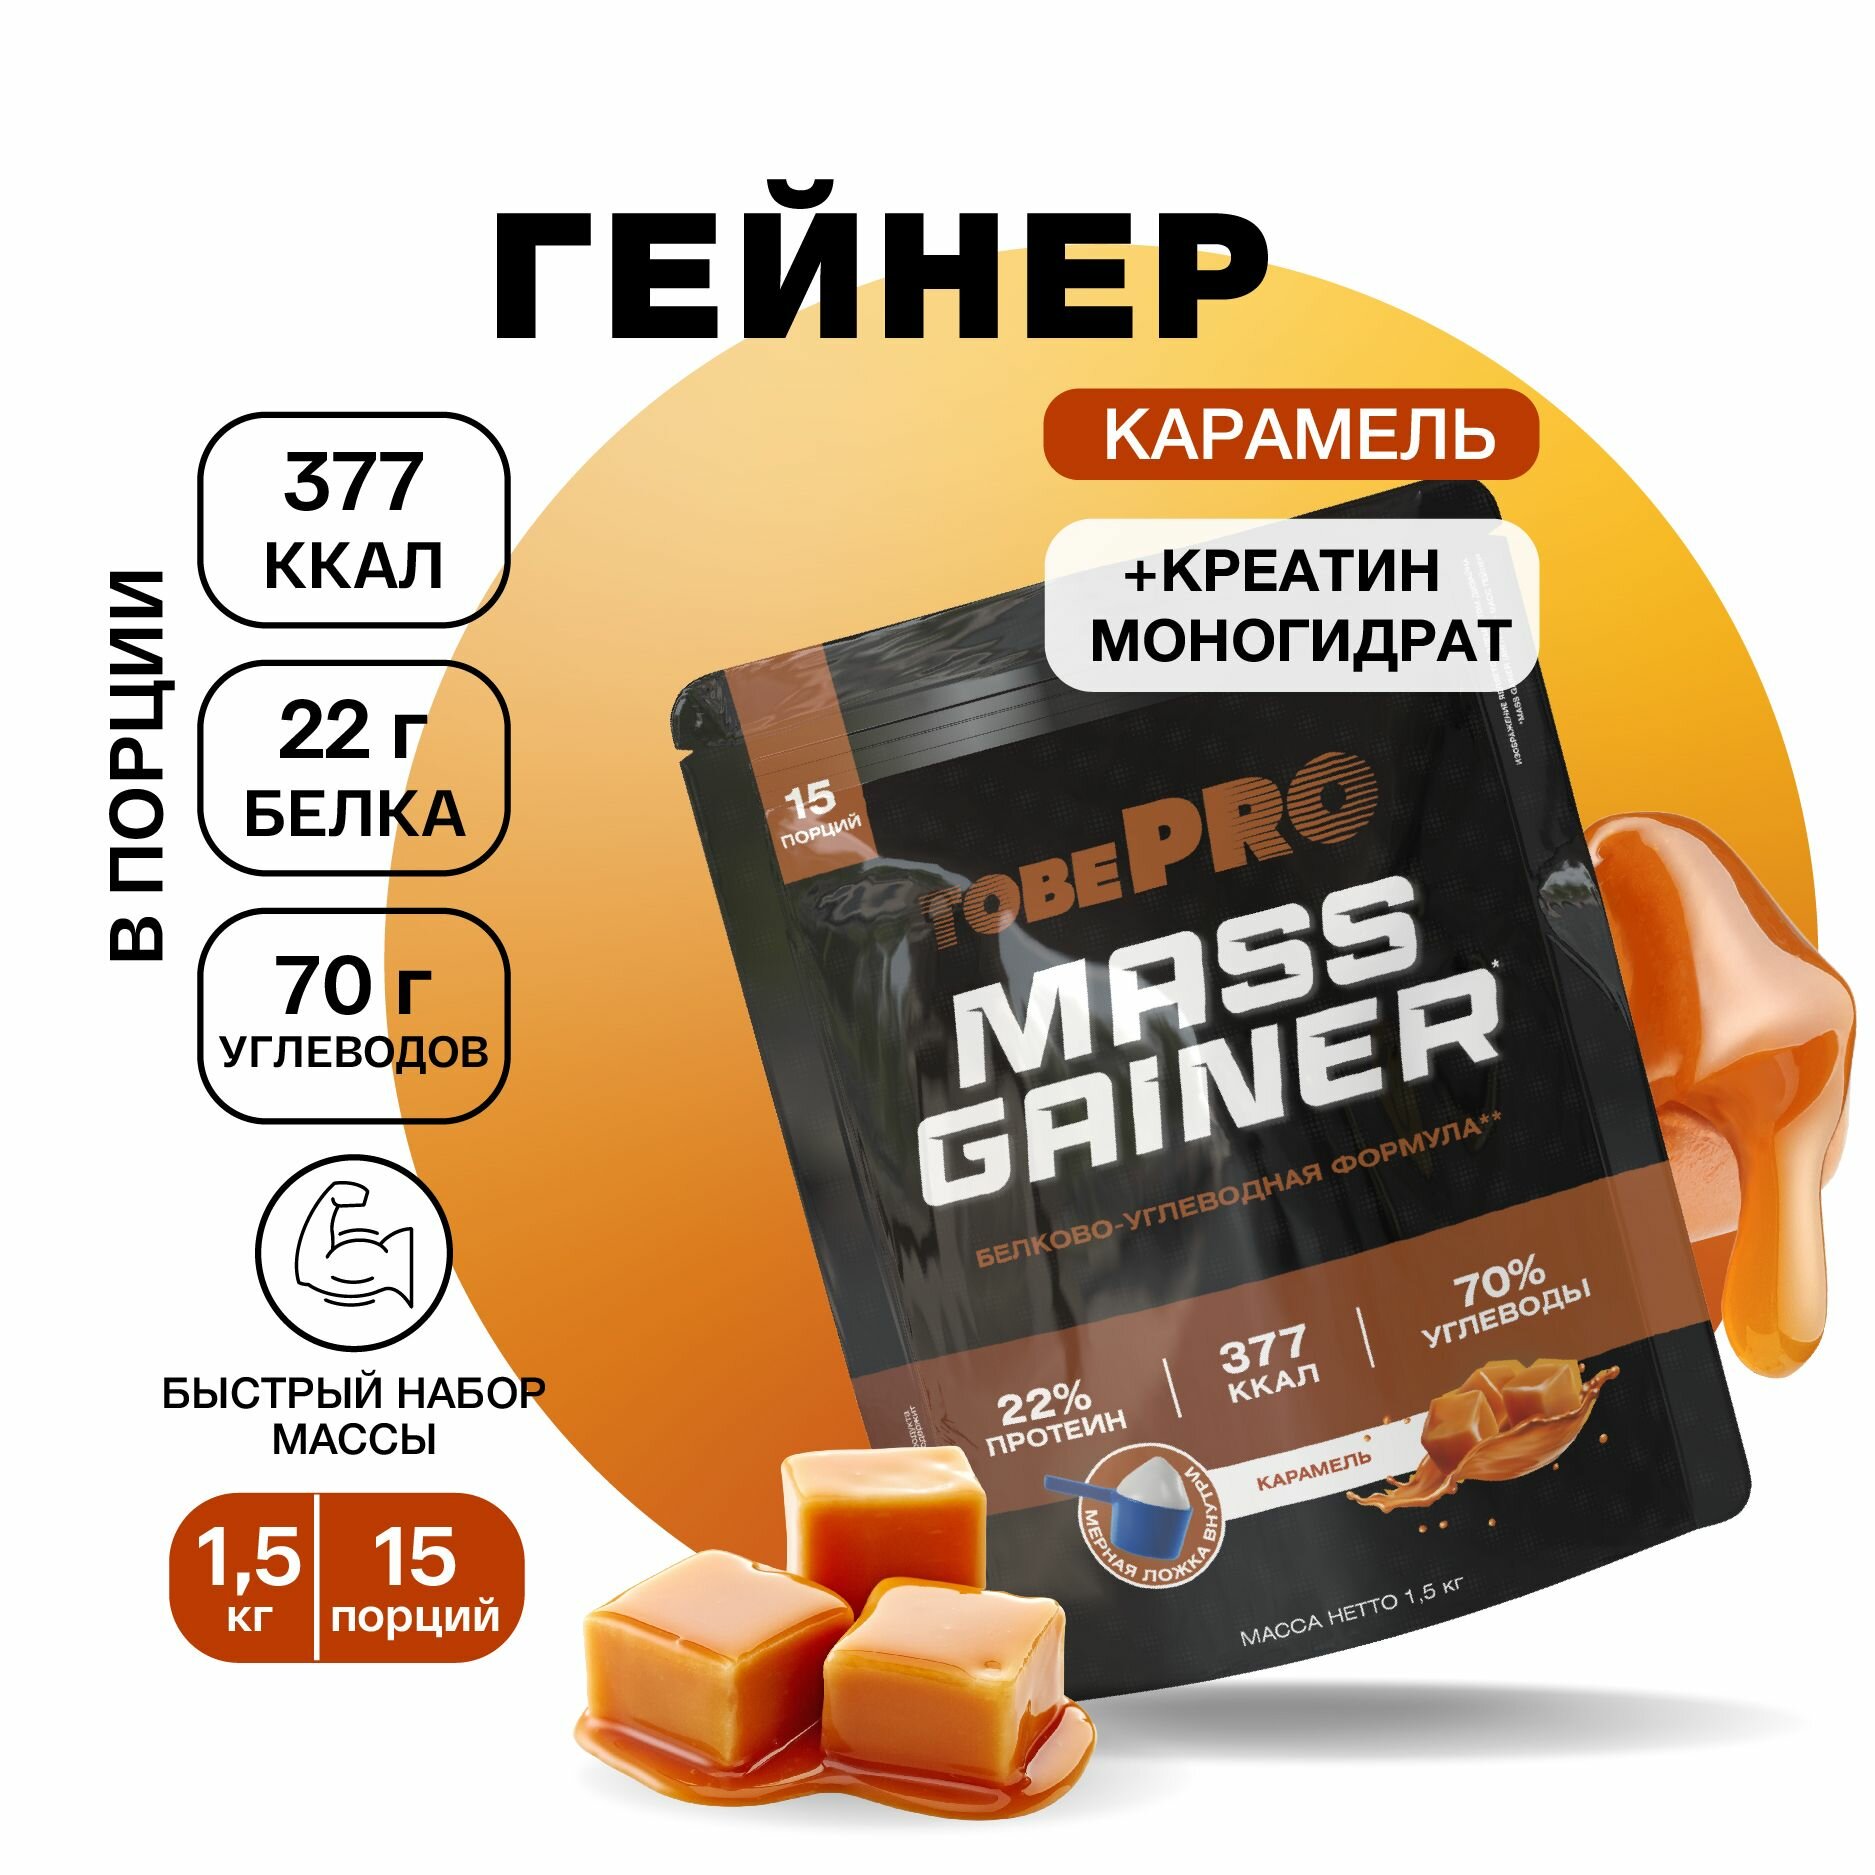 Гейнер протеин Карамель MASS GAINER TobePRO для набора мышечной массы, Иван-поле, высокобелковый, 1,5 кг